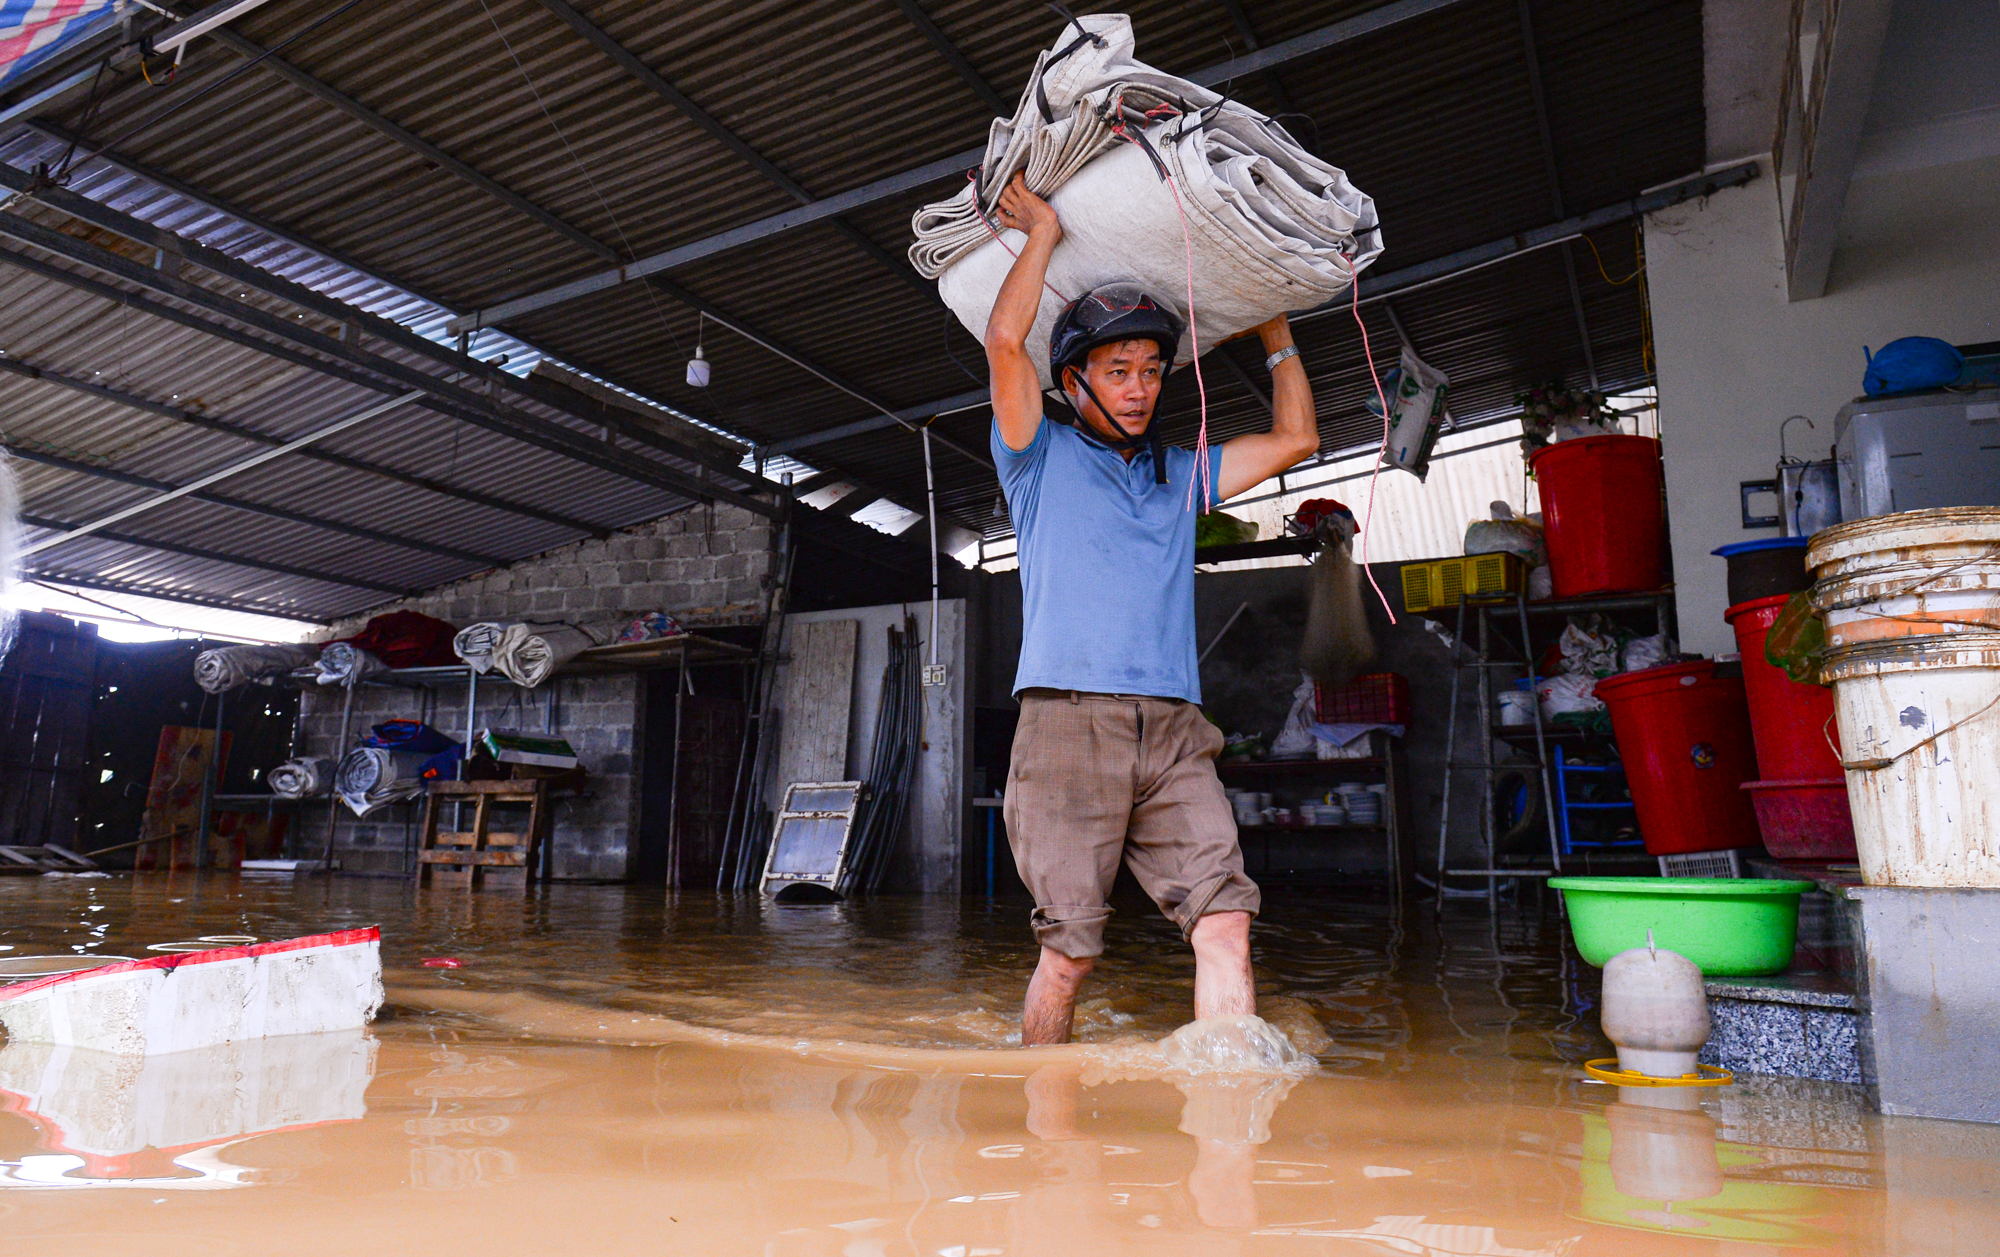 Người dân ngoại thành Hà Nội bì bõm trong nước lũ sau cơn mưa lớn: &quot;Nước lũ lên nhanh quá, chúng tôi chạy đồ không kịp&quot; - Ảnh 13.